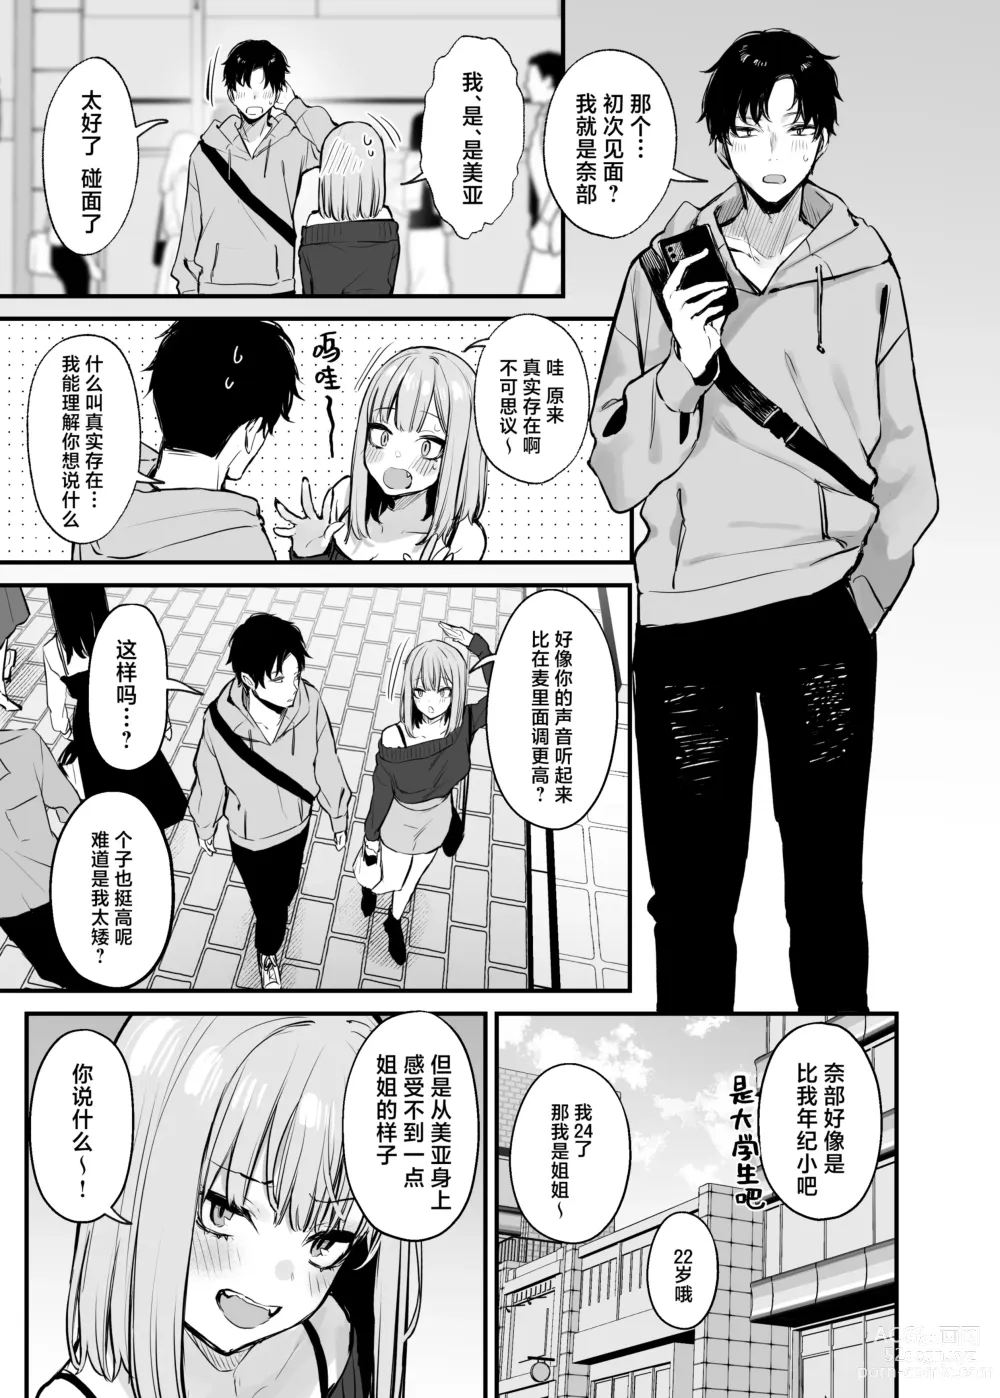 Page 24 of manga 元カレとはできなかったセックスしてもいいですか